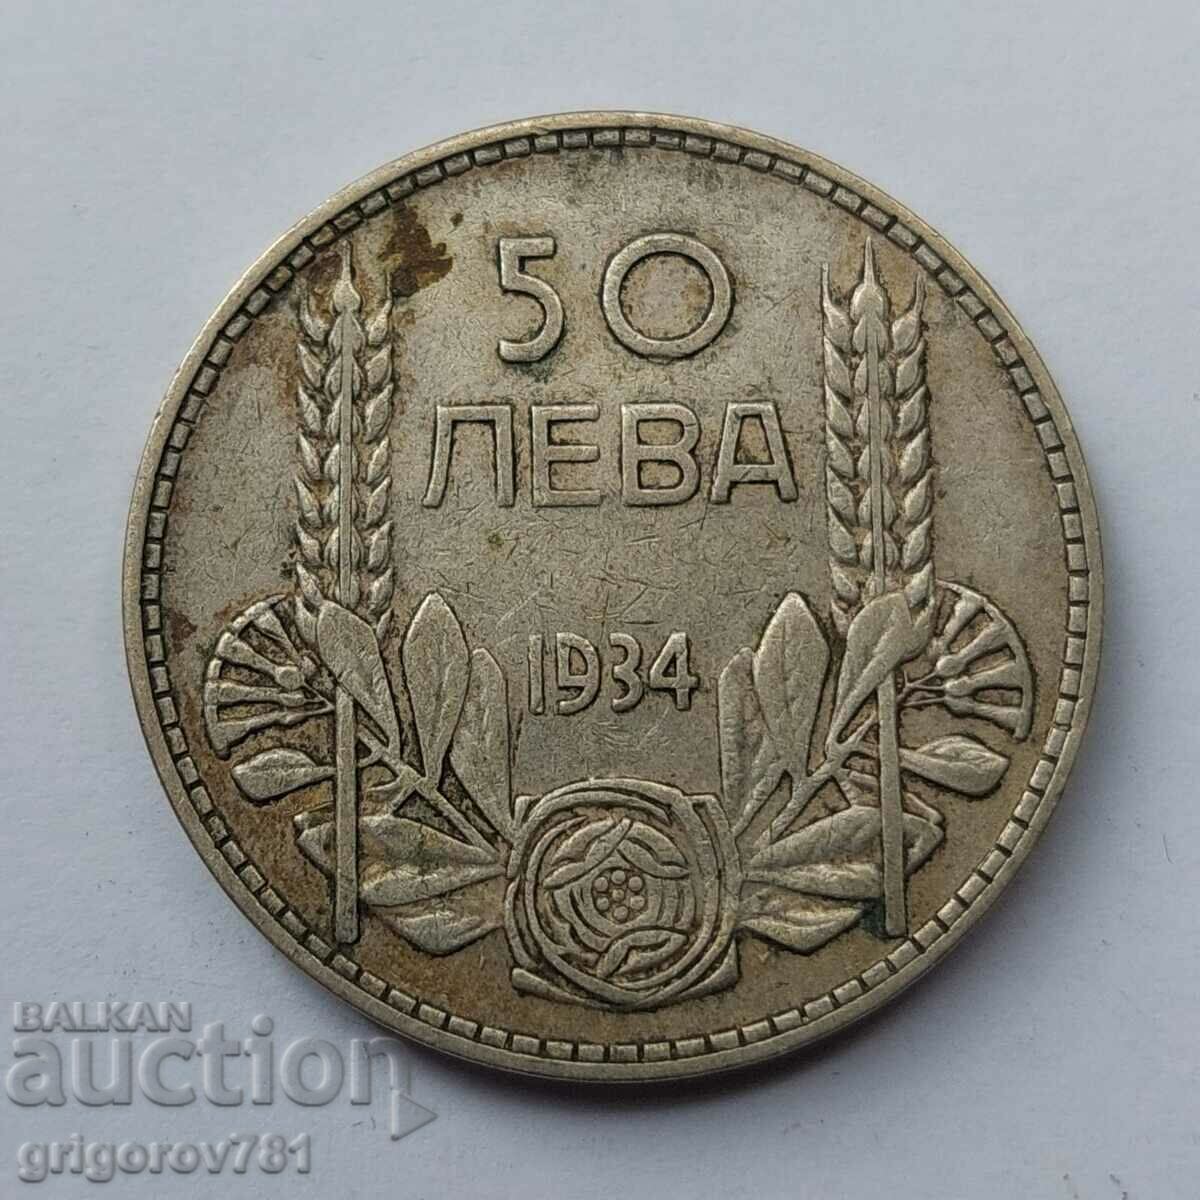 50 leva argint Bulgaria 1934 - monedă de argint #94